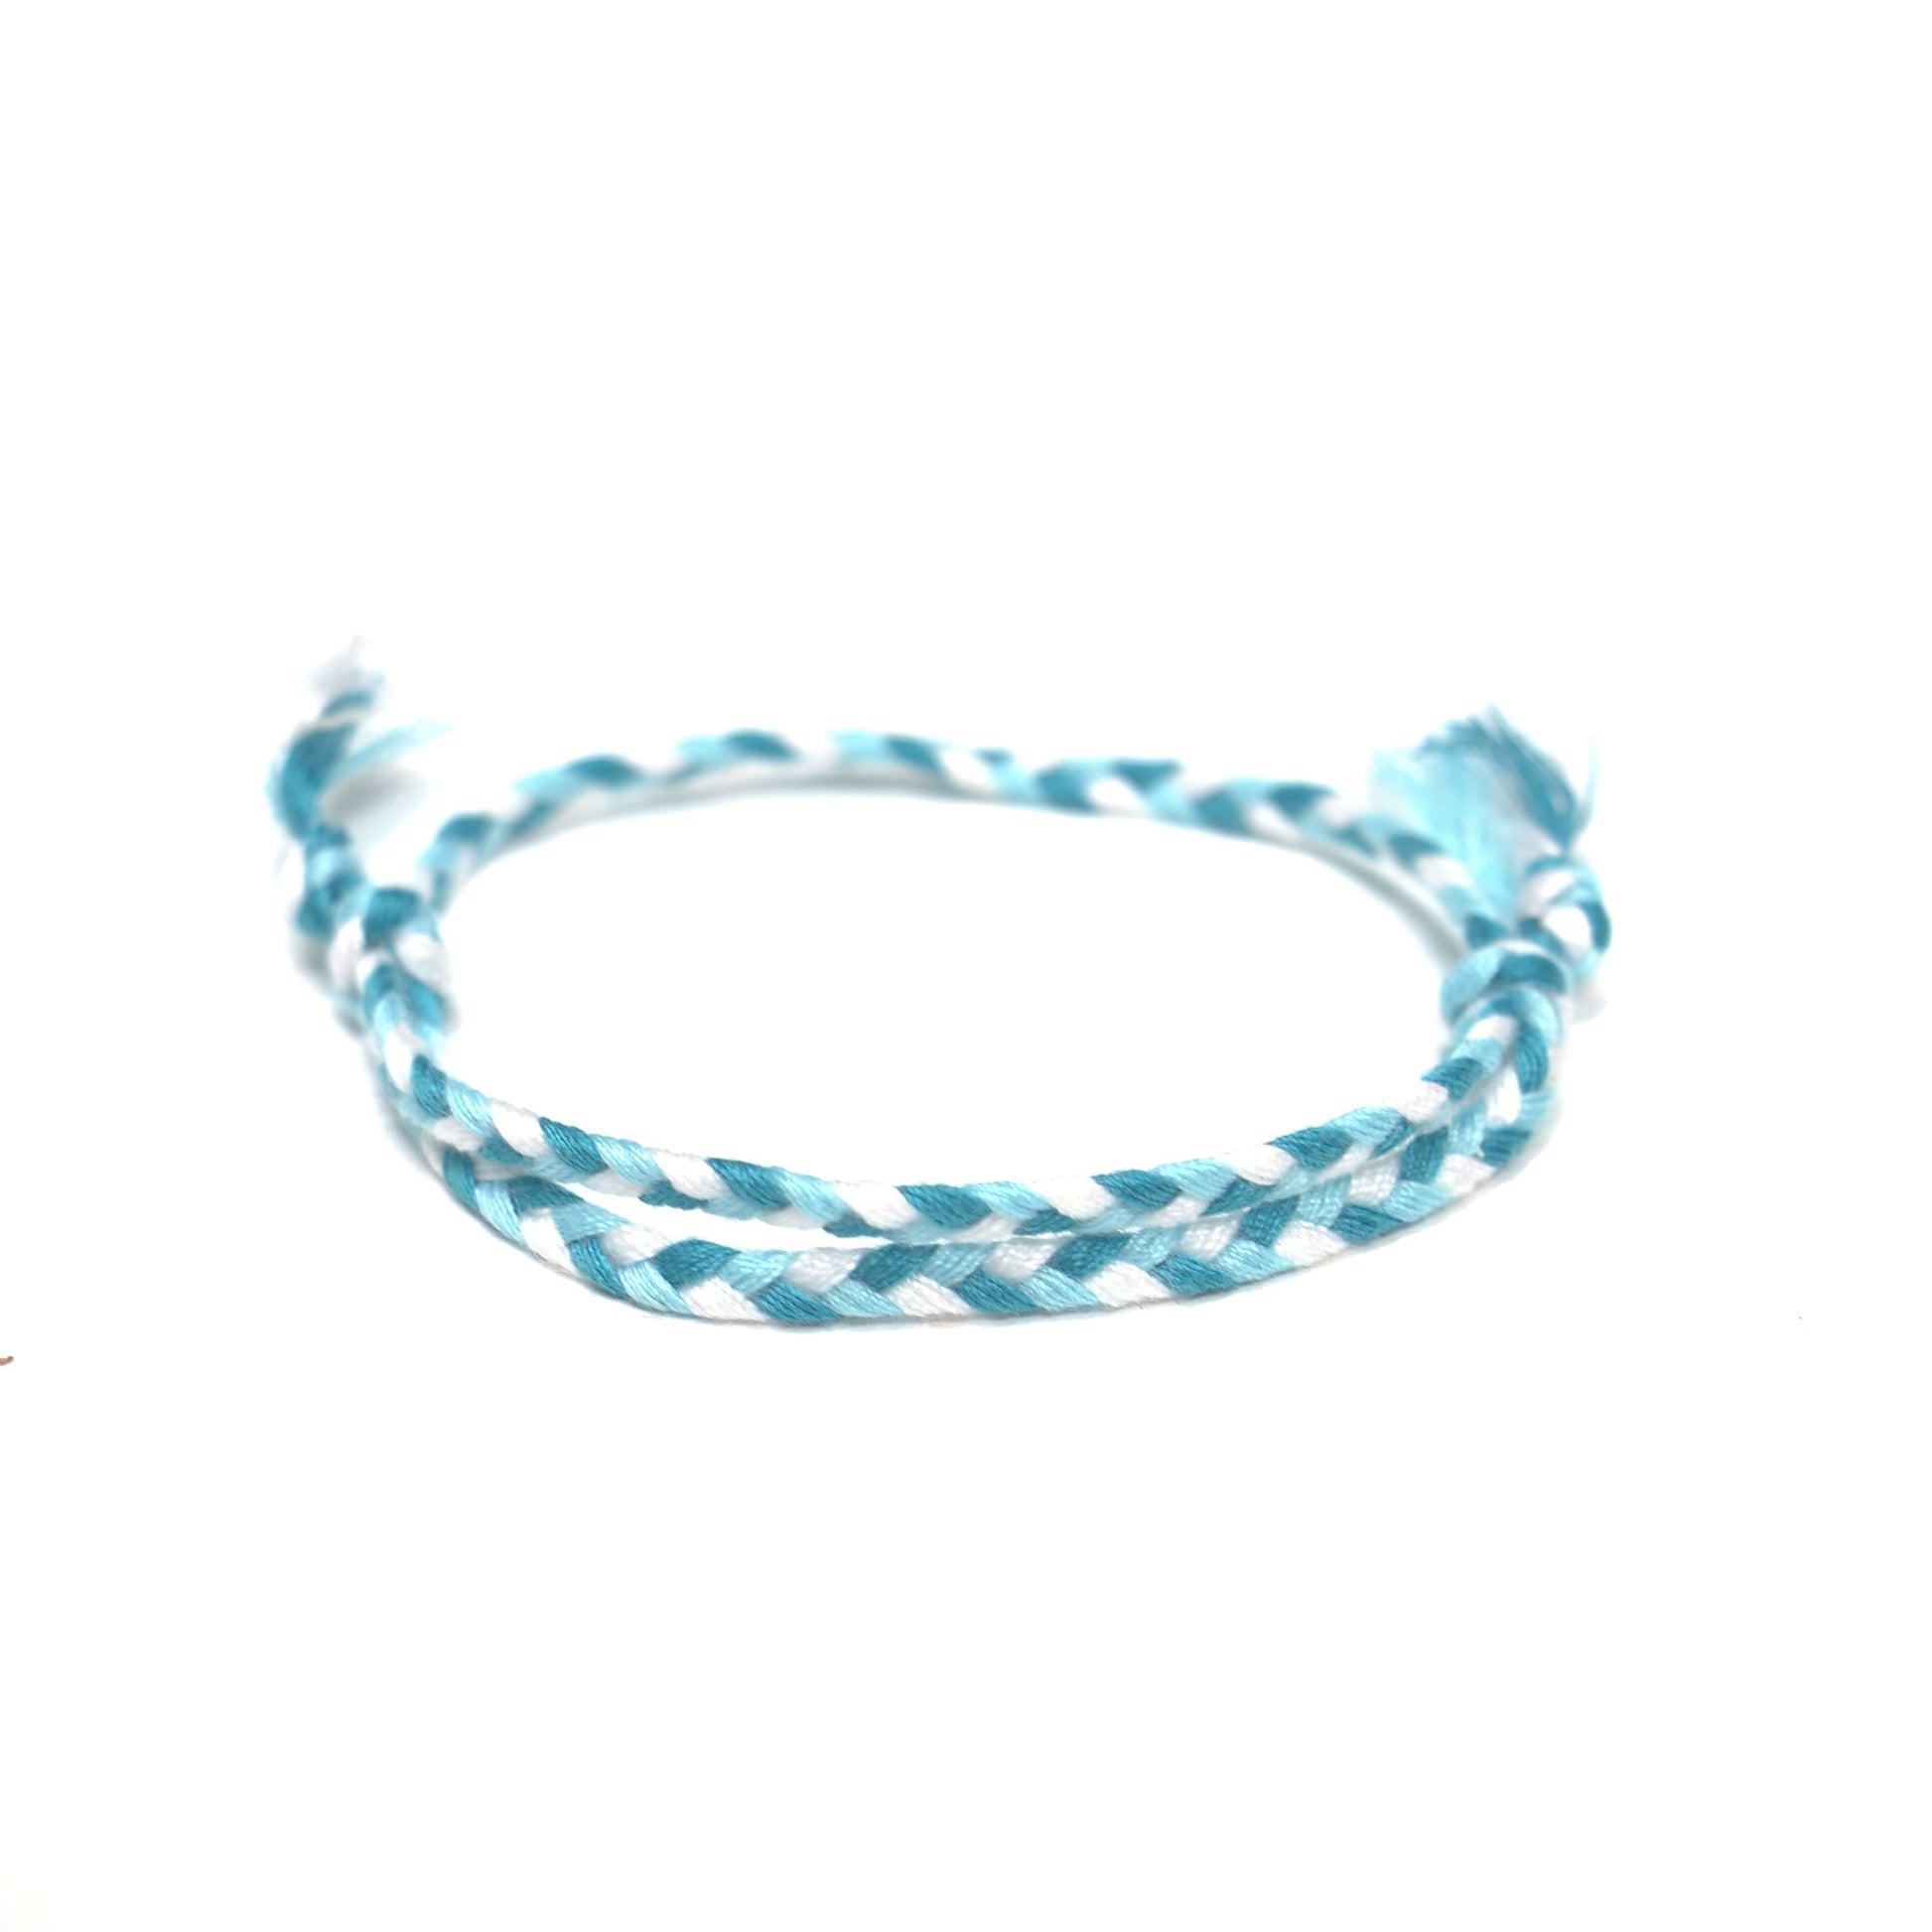 Salento armband (blauw) - www.mundobracelets.com